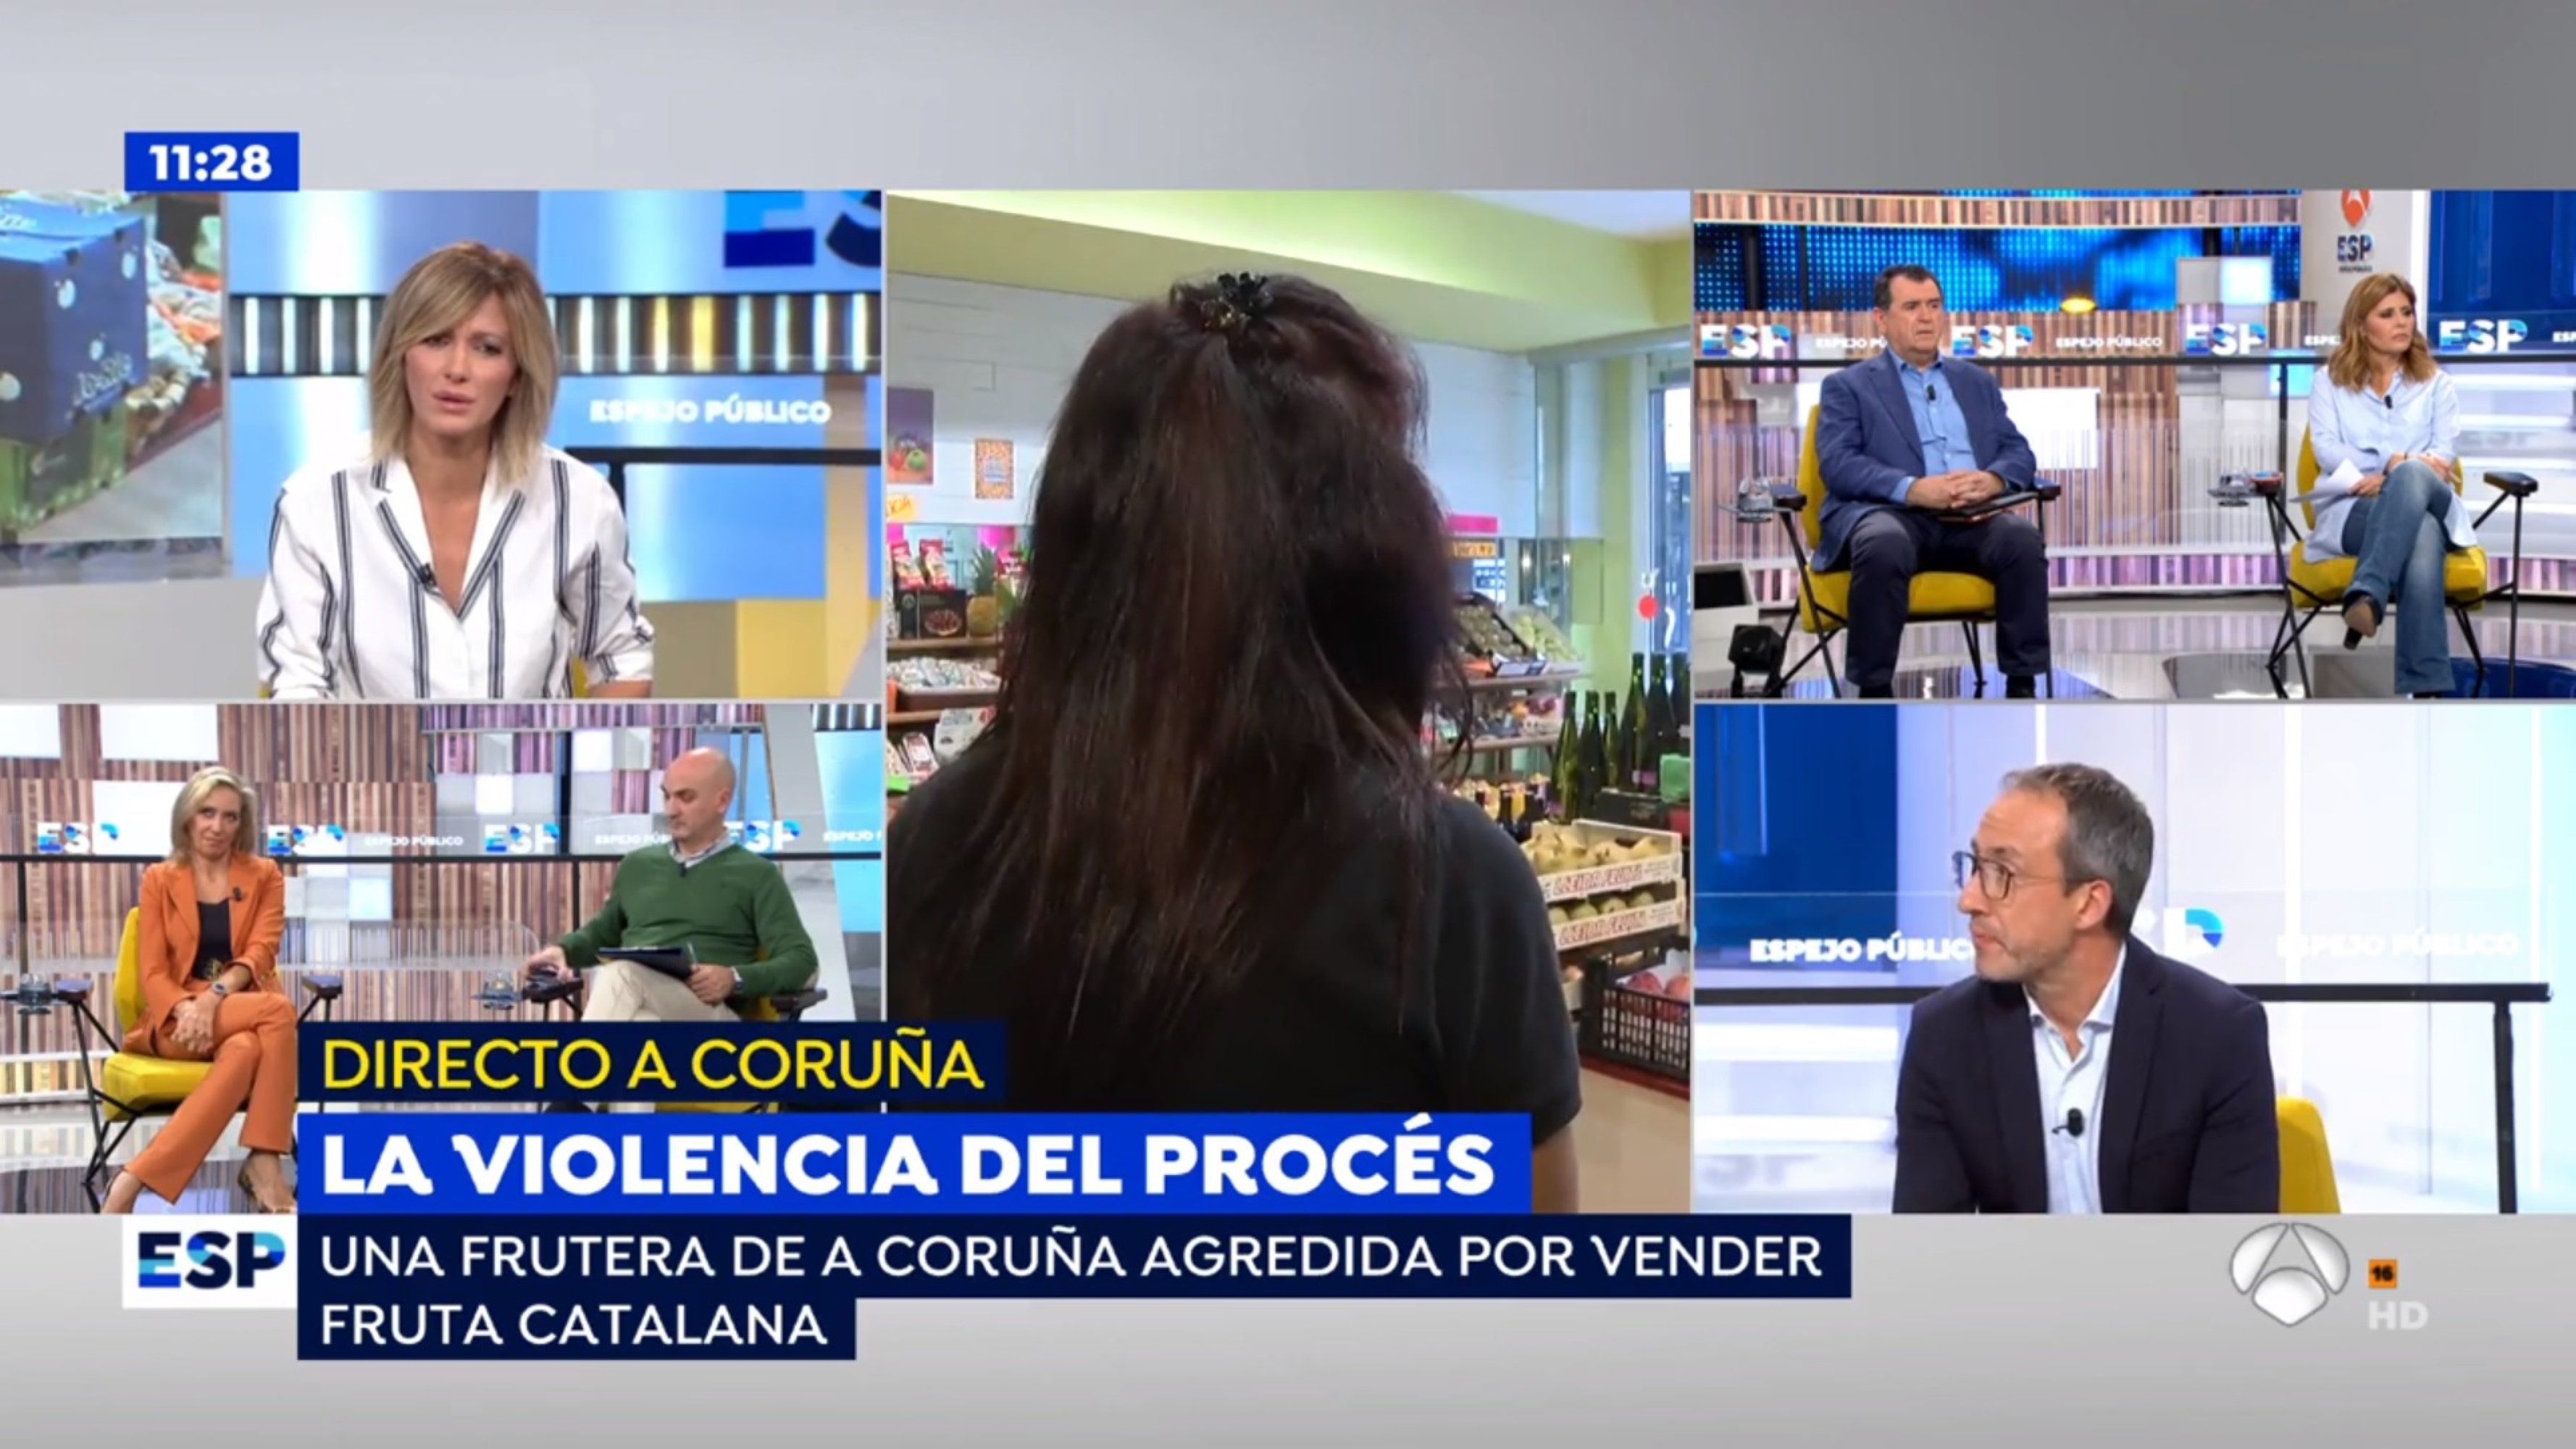 Durísimo relato de la frutera de Galicia agredida por vender productos catalanes